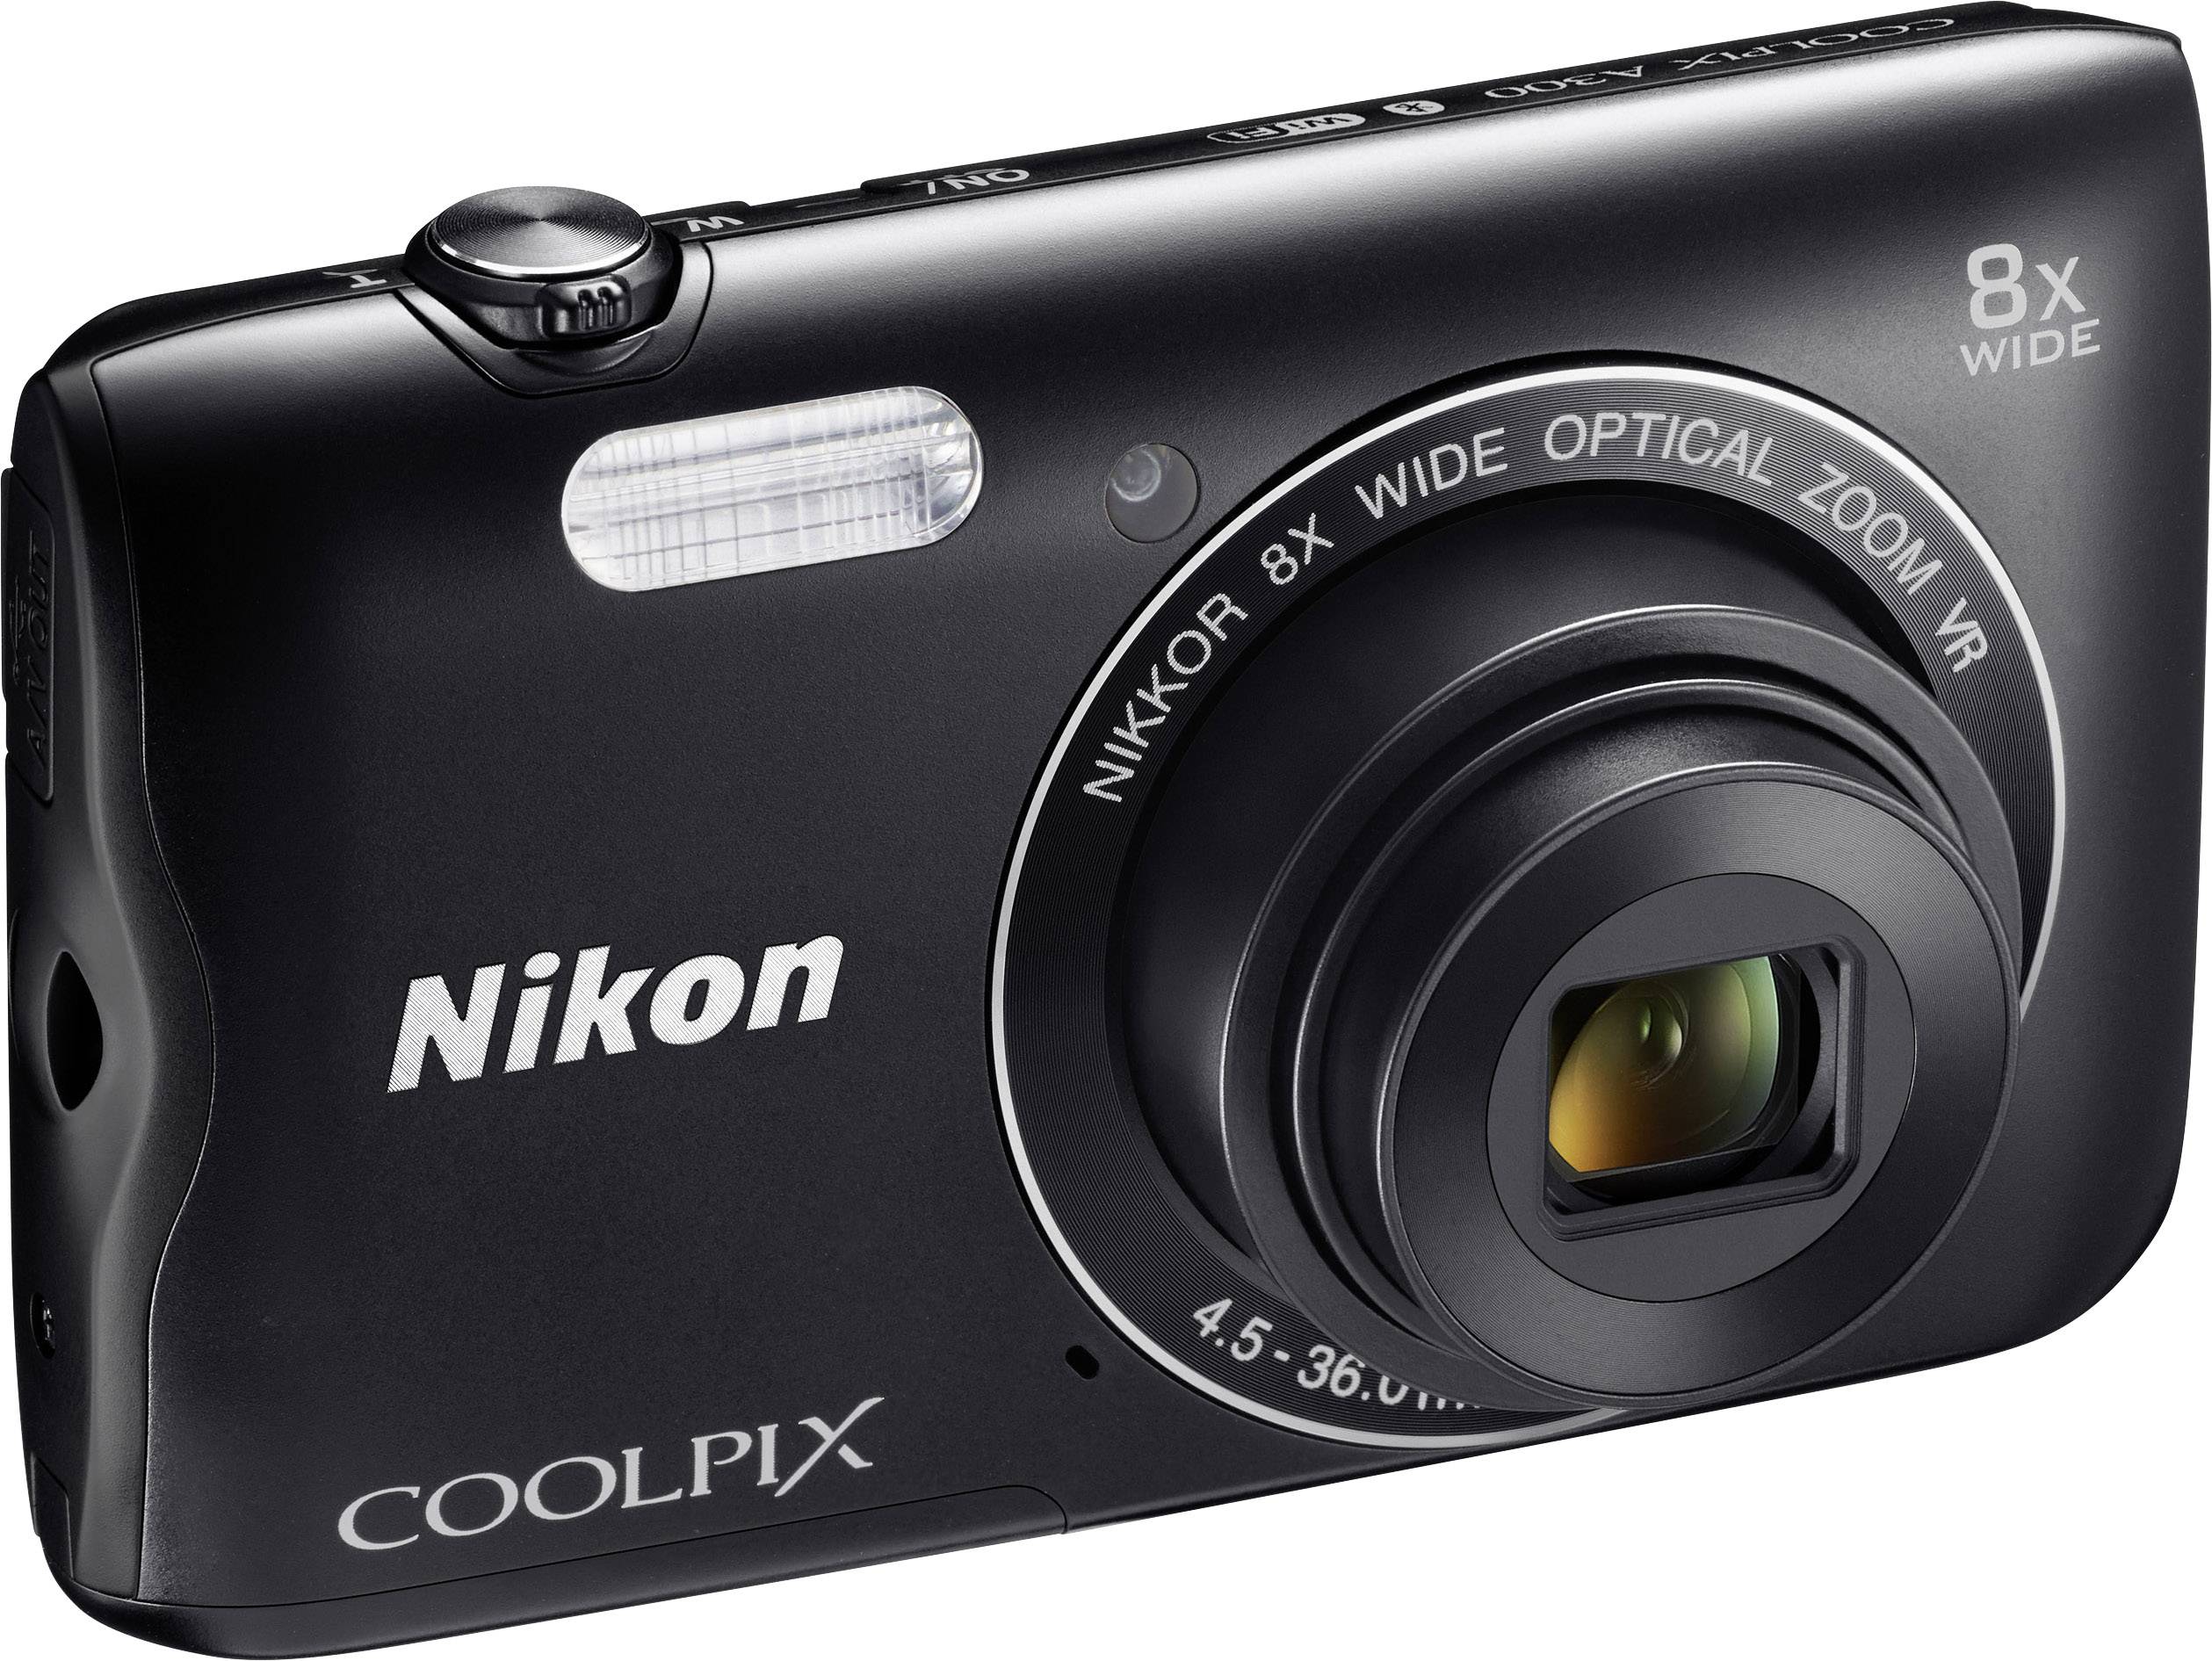 Appareil photo numérique Nikon Coolpix A-300 20.1 Mill. pixel Zoom optique: 8 x noir WiFi ...